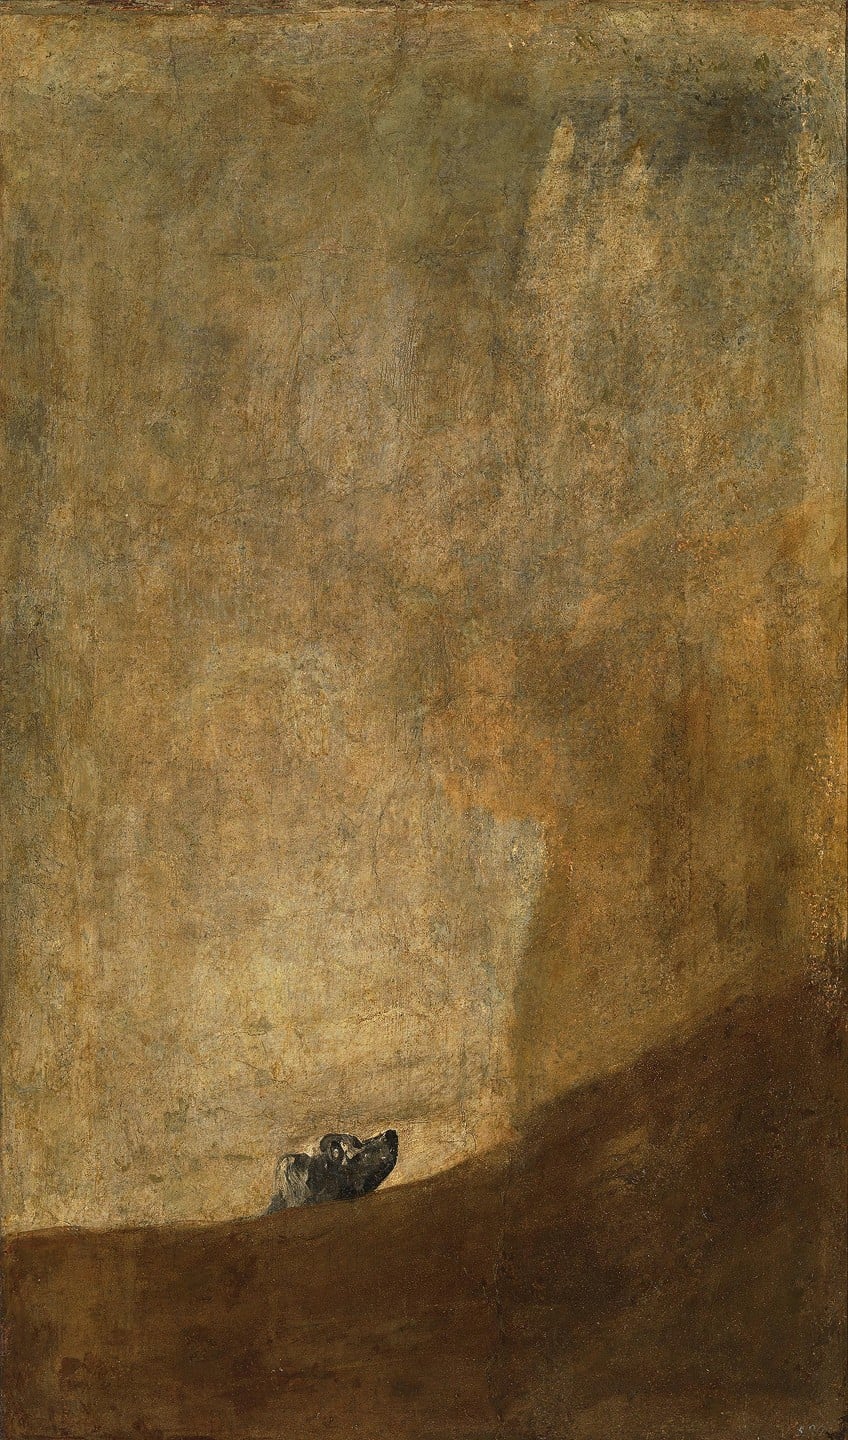 The Dog by Francisco Goya Analysis